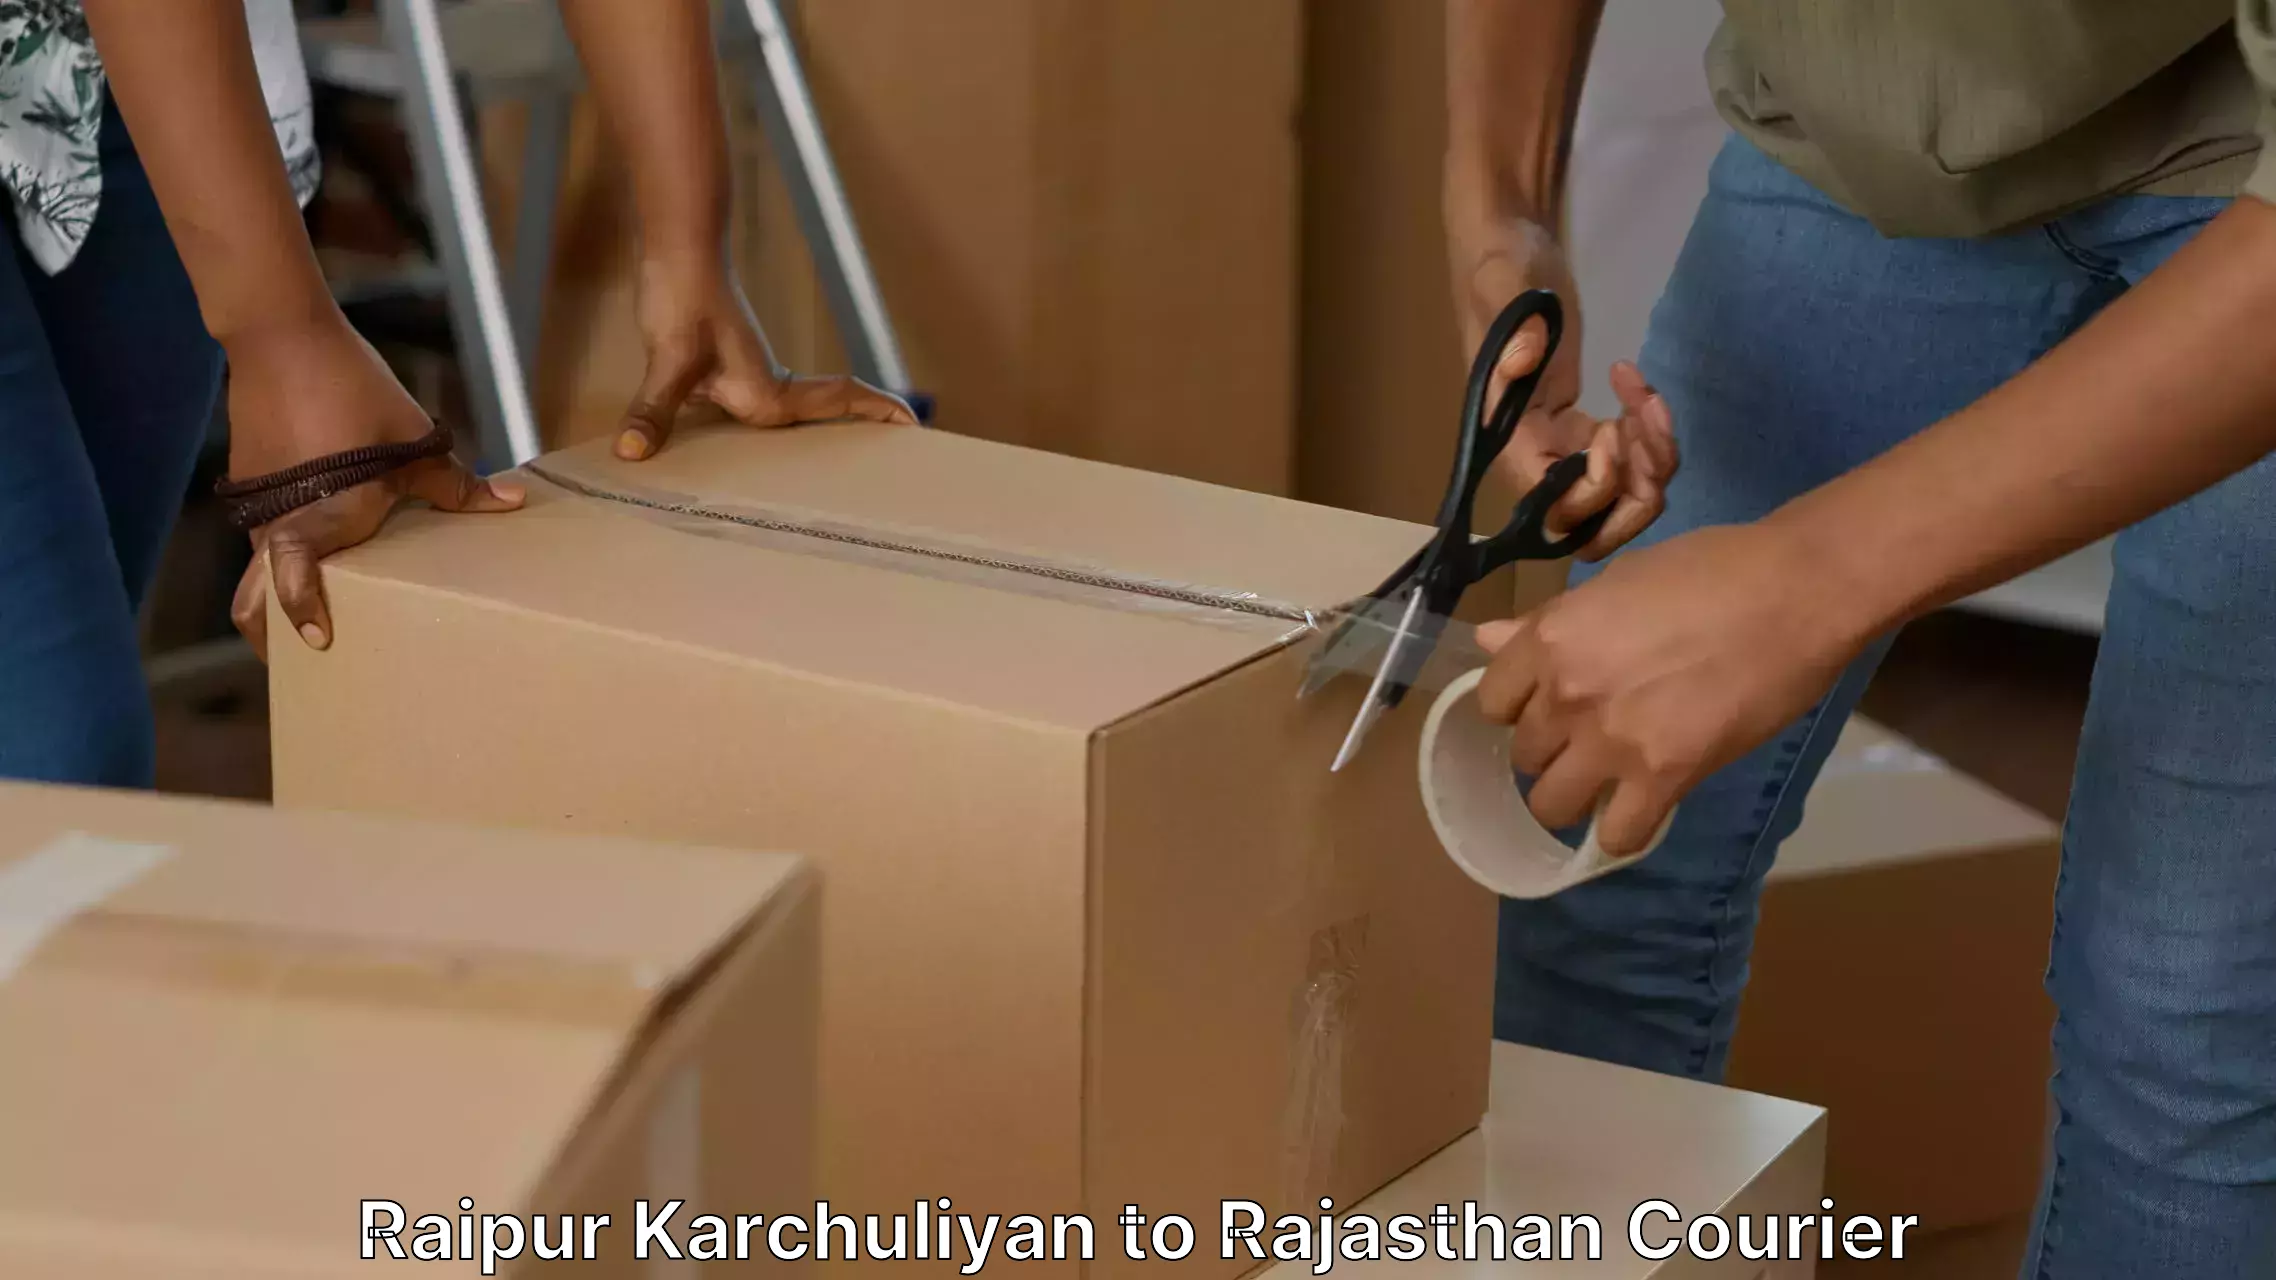 Furniture moving and handling Raipur Karchuliyan to Phalodi